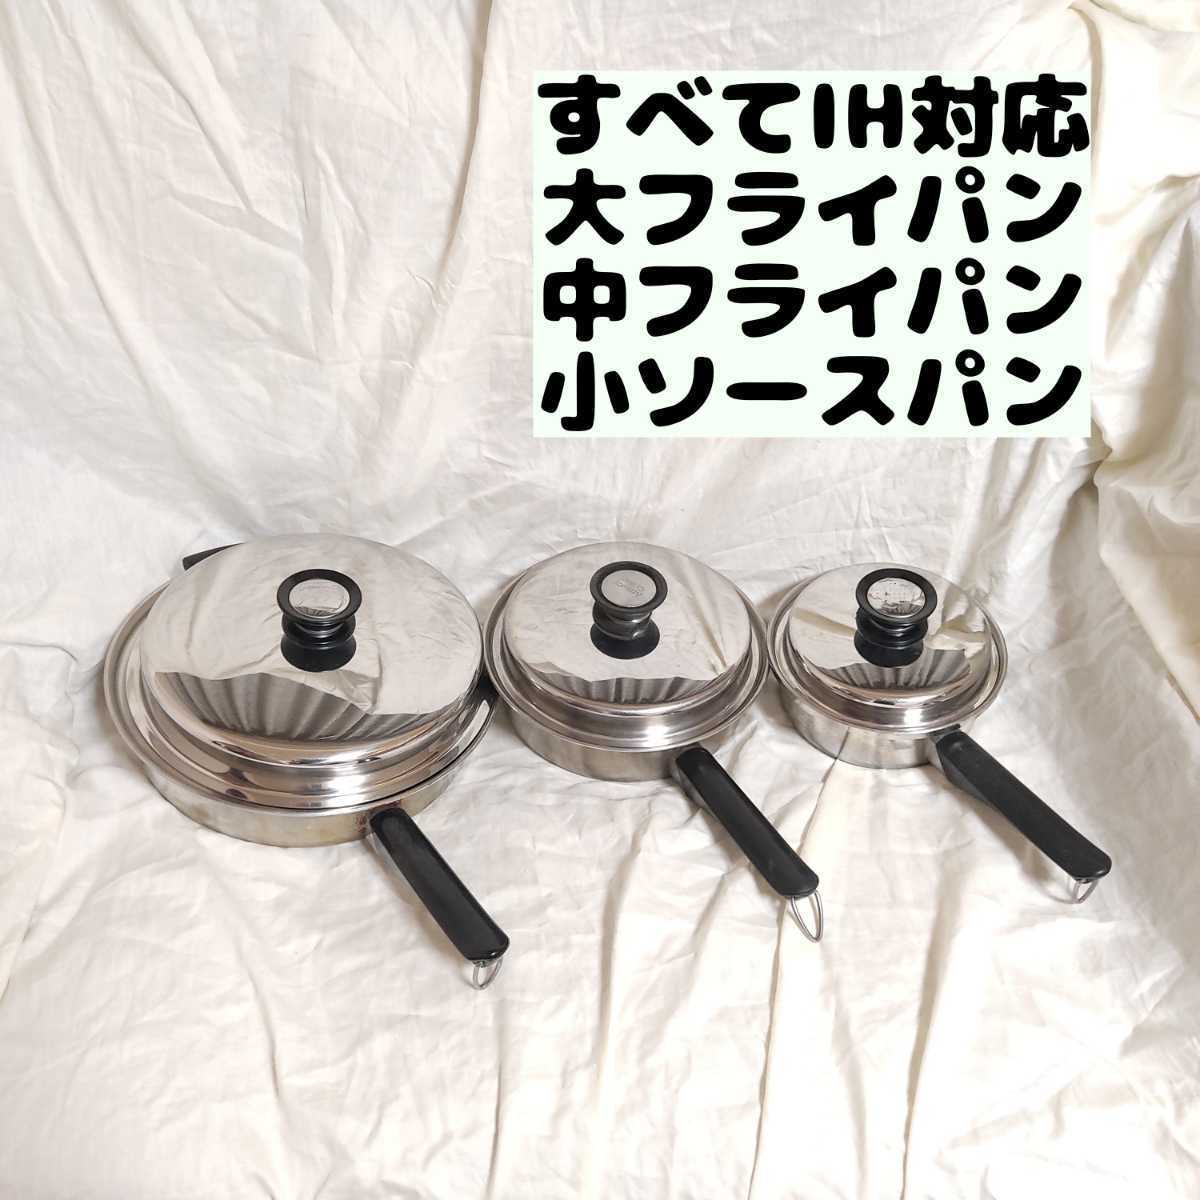 日本売り 【送料無料】アムウェイ ソースパン&フライパンセット 鍋 クイーン 調理器具